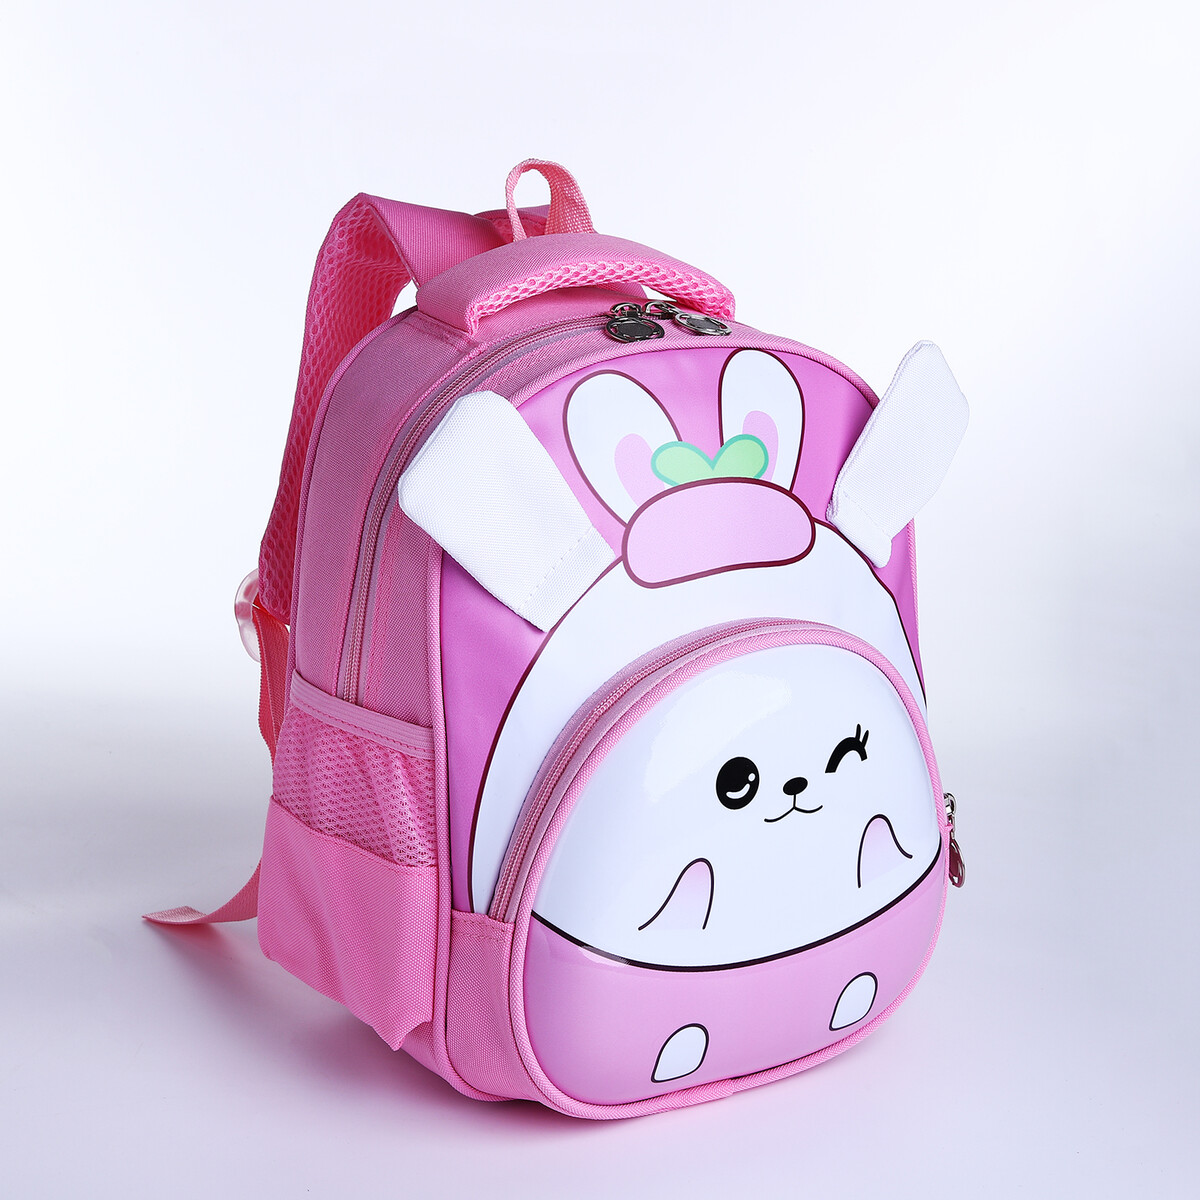 Рюкзак детский на молнии, 3 наружных кармана, цвет розовый рюкзак детский на молнии 3 наружных кармана белый